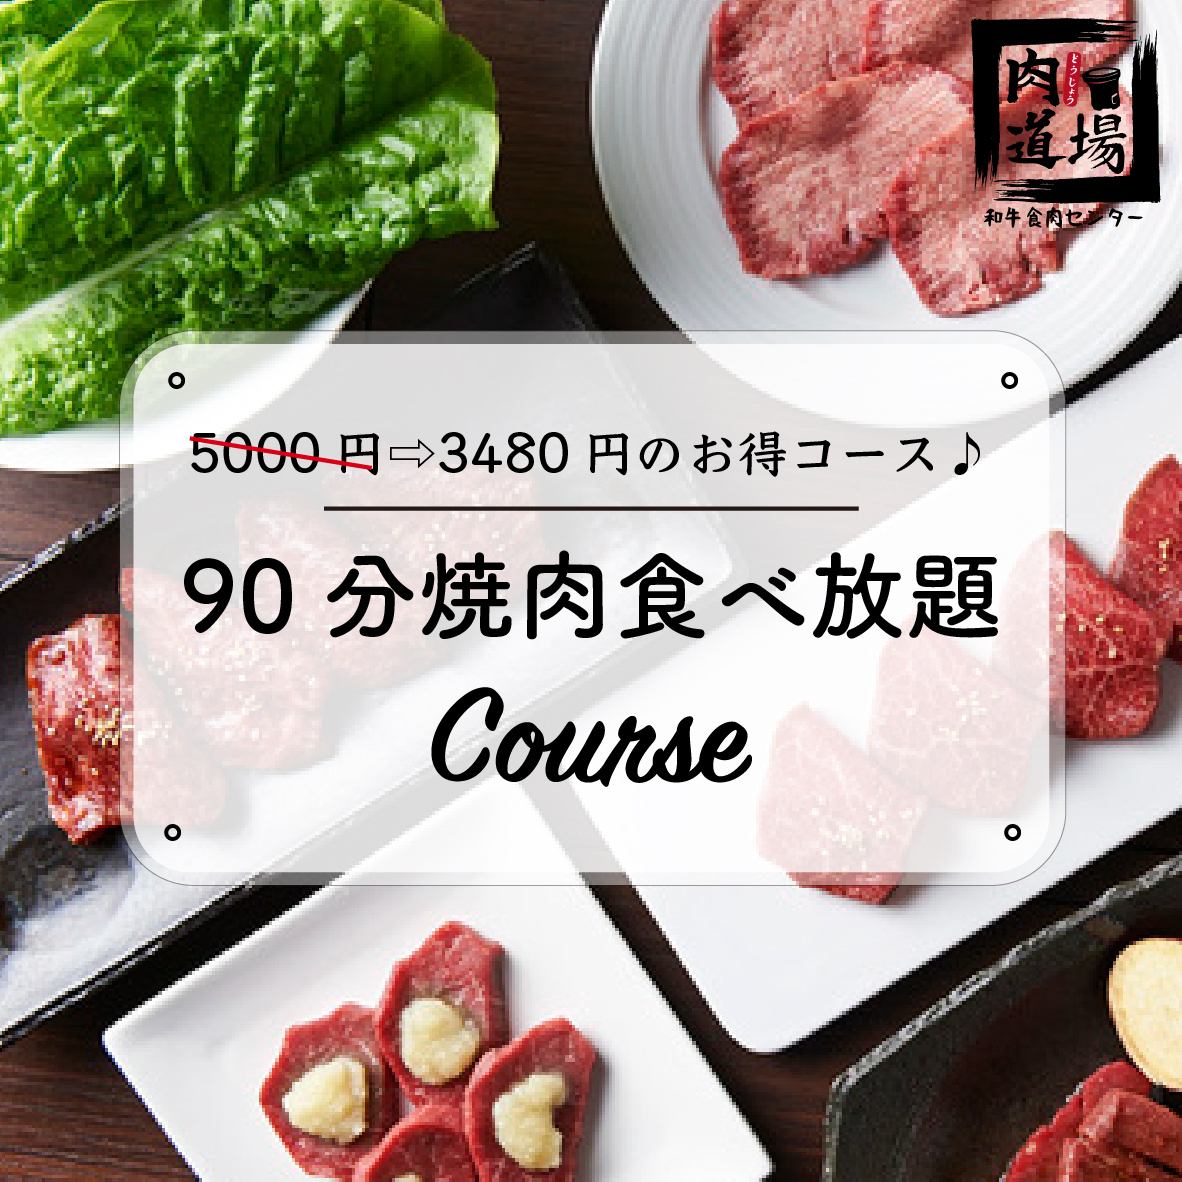 “肉道場簡單套餐”★90分鐘自助套餐★3,480日元